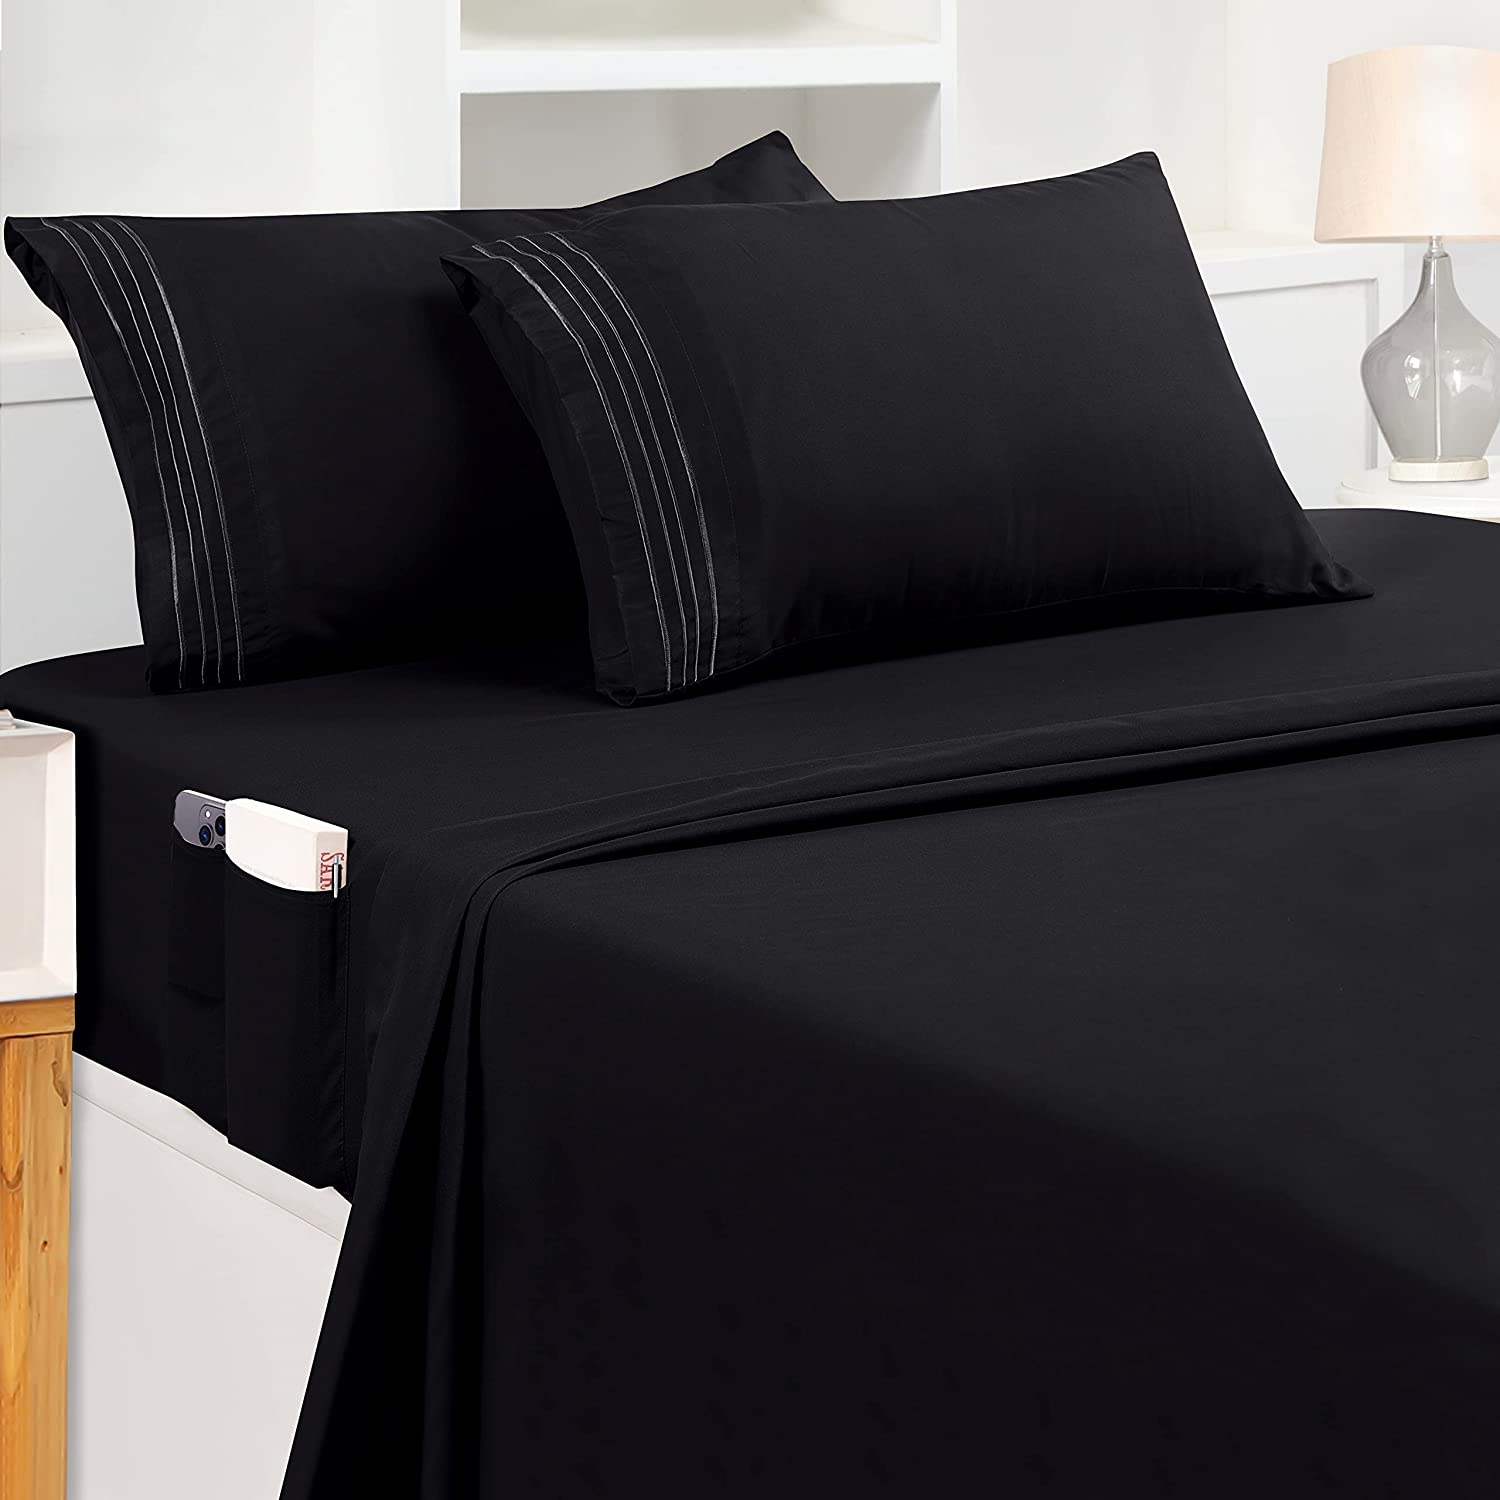 Utopia Bedding Queen Sheet Set – Soft Microfiber 4 Piece Luxury